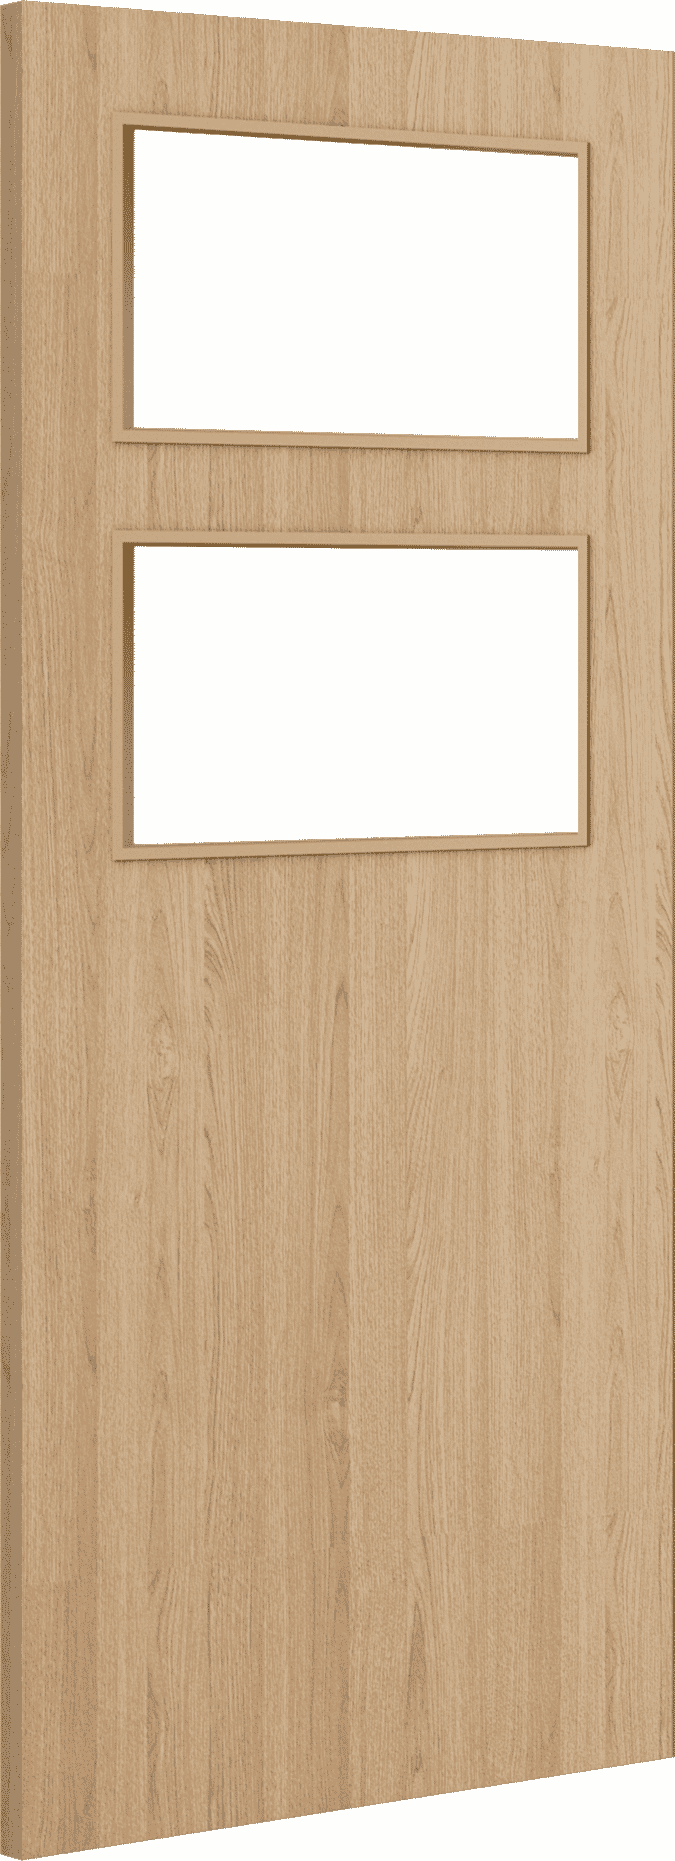 1981mm x 762mm x 44mm (30") Architectural Oak 02 Clear Glazed - Prefinished FD30 Fire Door Blank